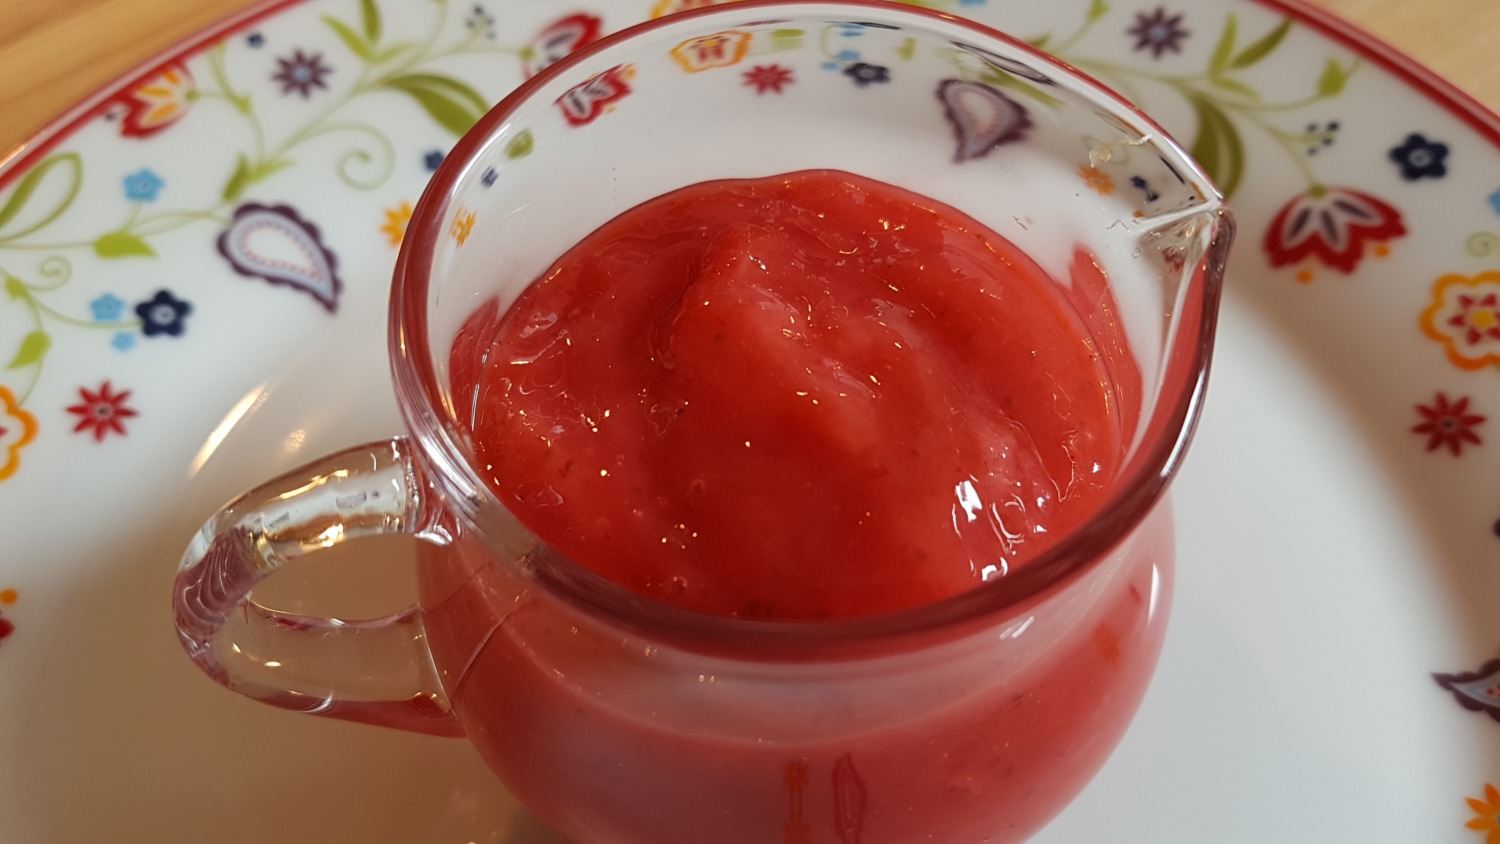 Erdbeer-Kokos-Marmelade | Bines Thermi-Welt